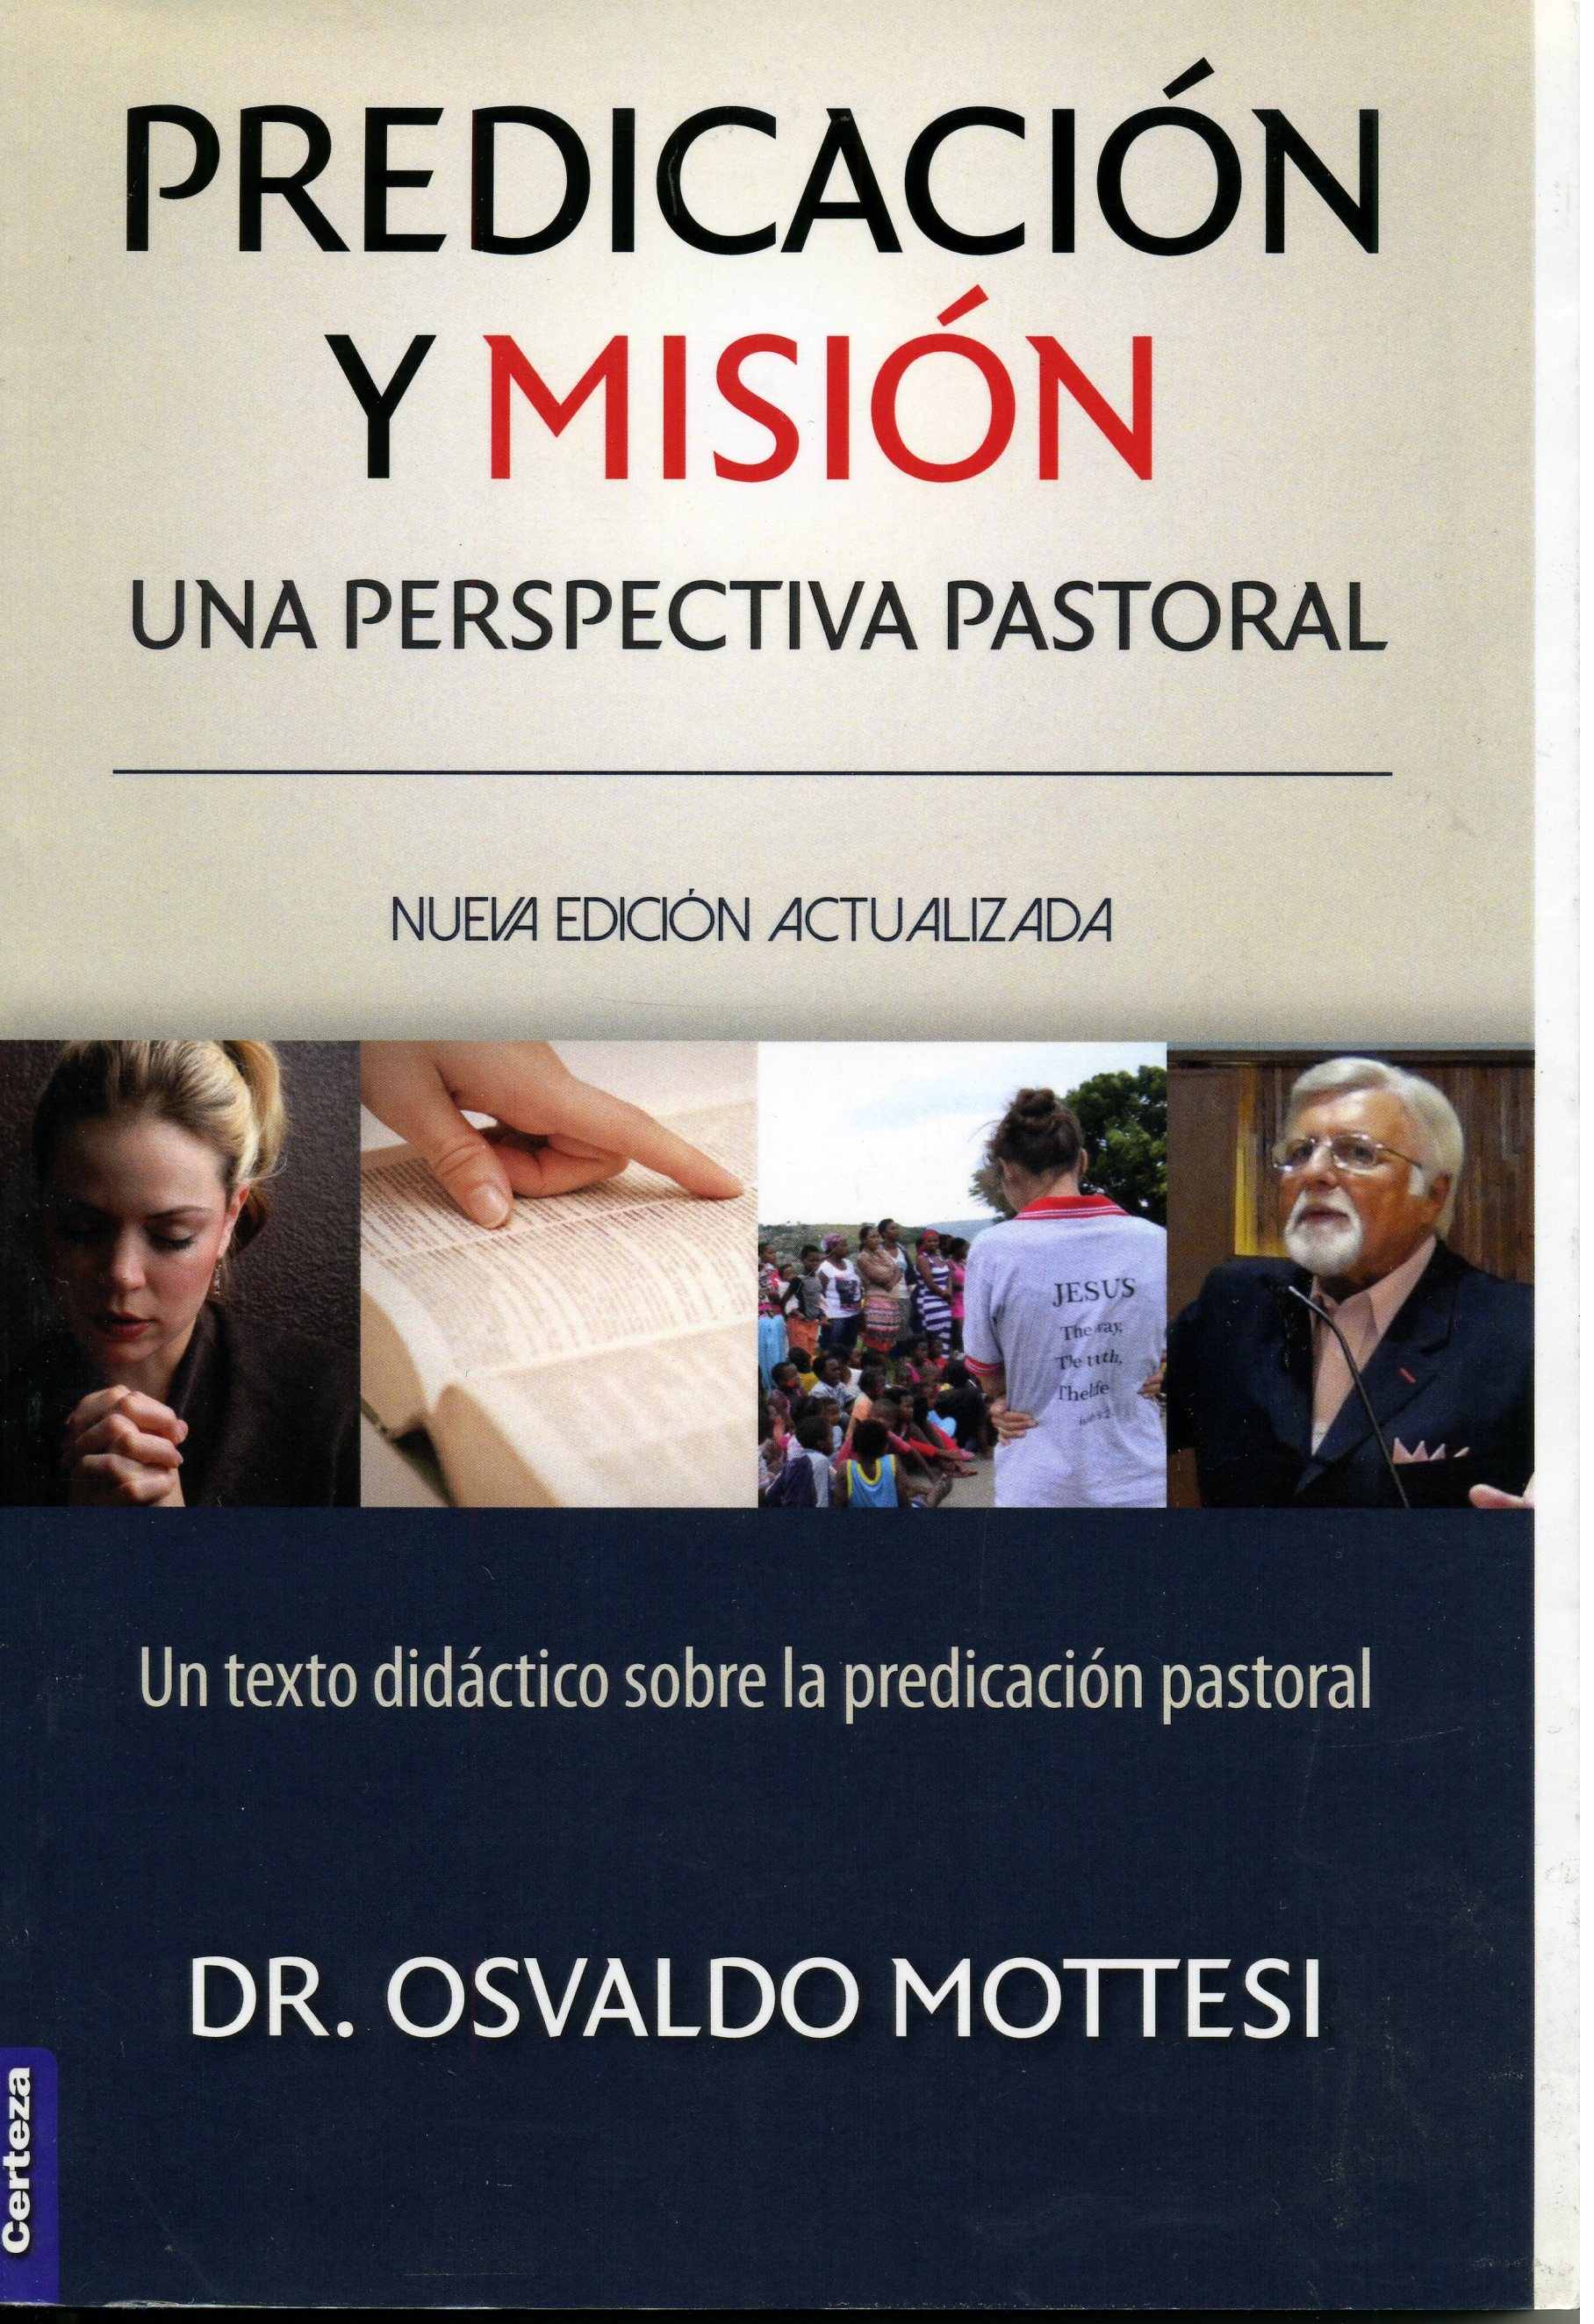 Predicación y Misión una Perspectiva Pastoral